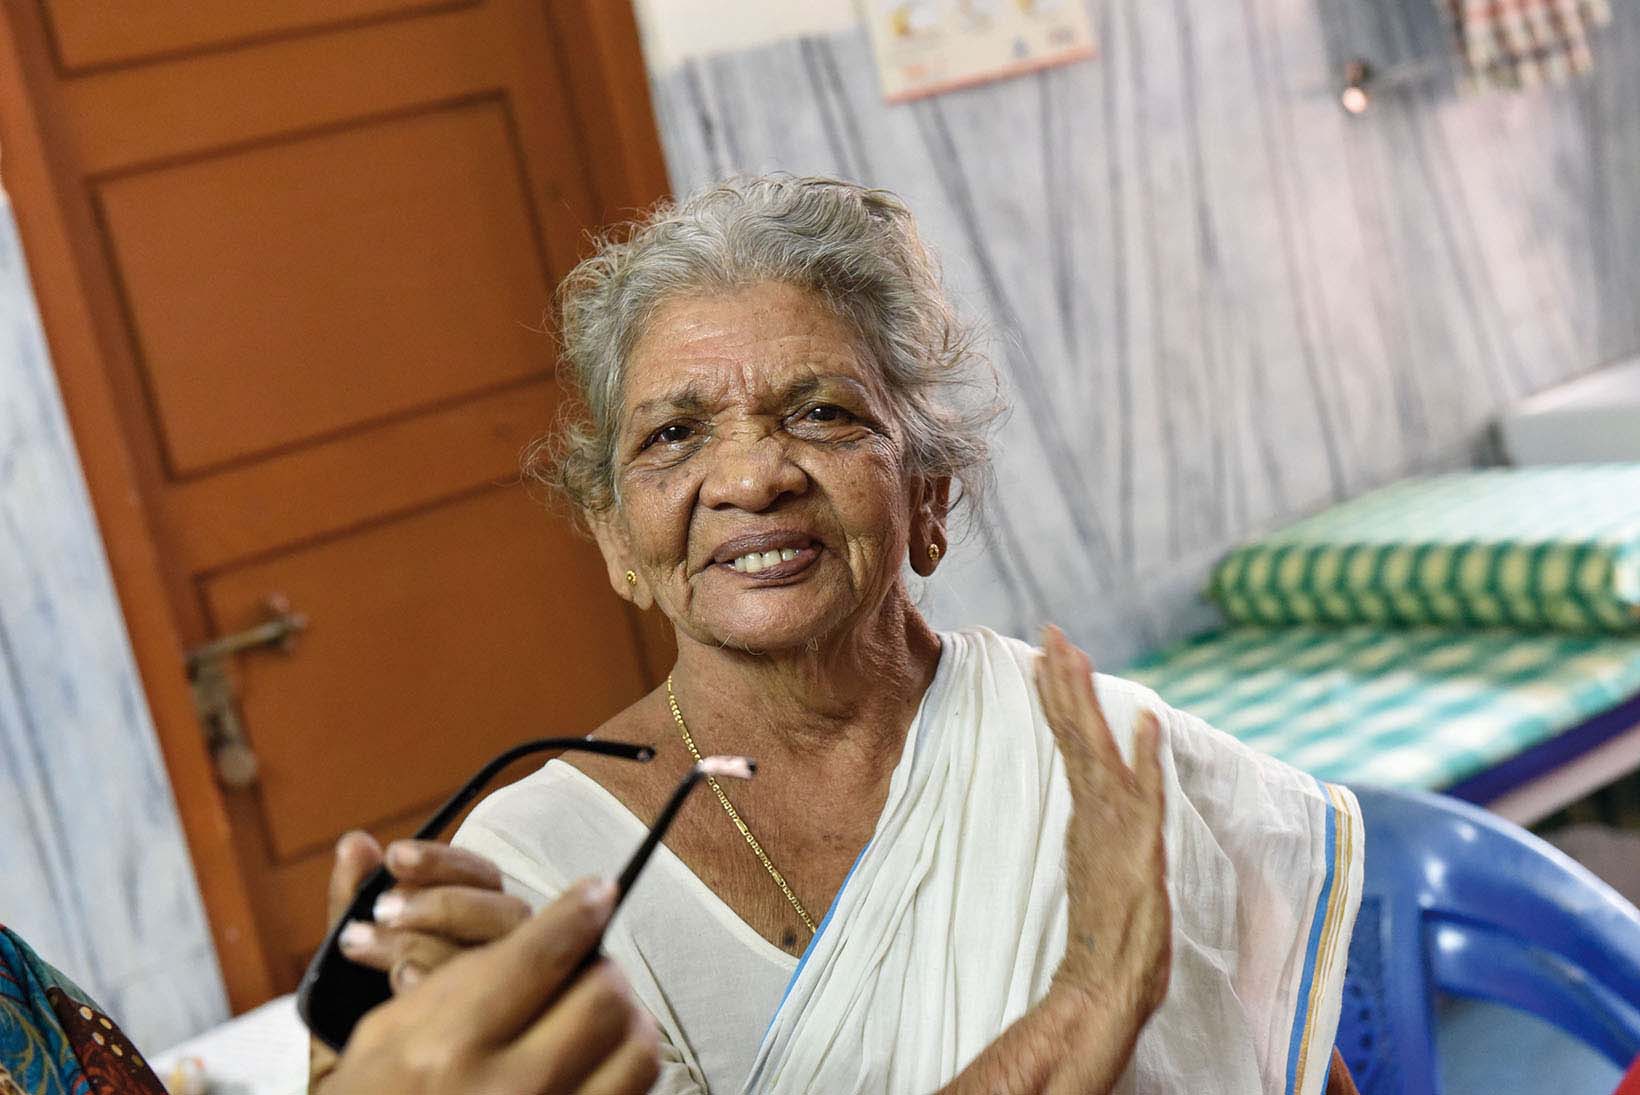 Après son opération de la cataracte, une Indienne d’un âge respectable regarde l’objectif, l’air heureuse. Quelqu’un lui tend des lunettes depuis la gauche.